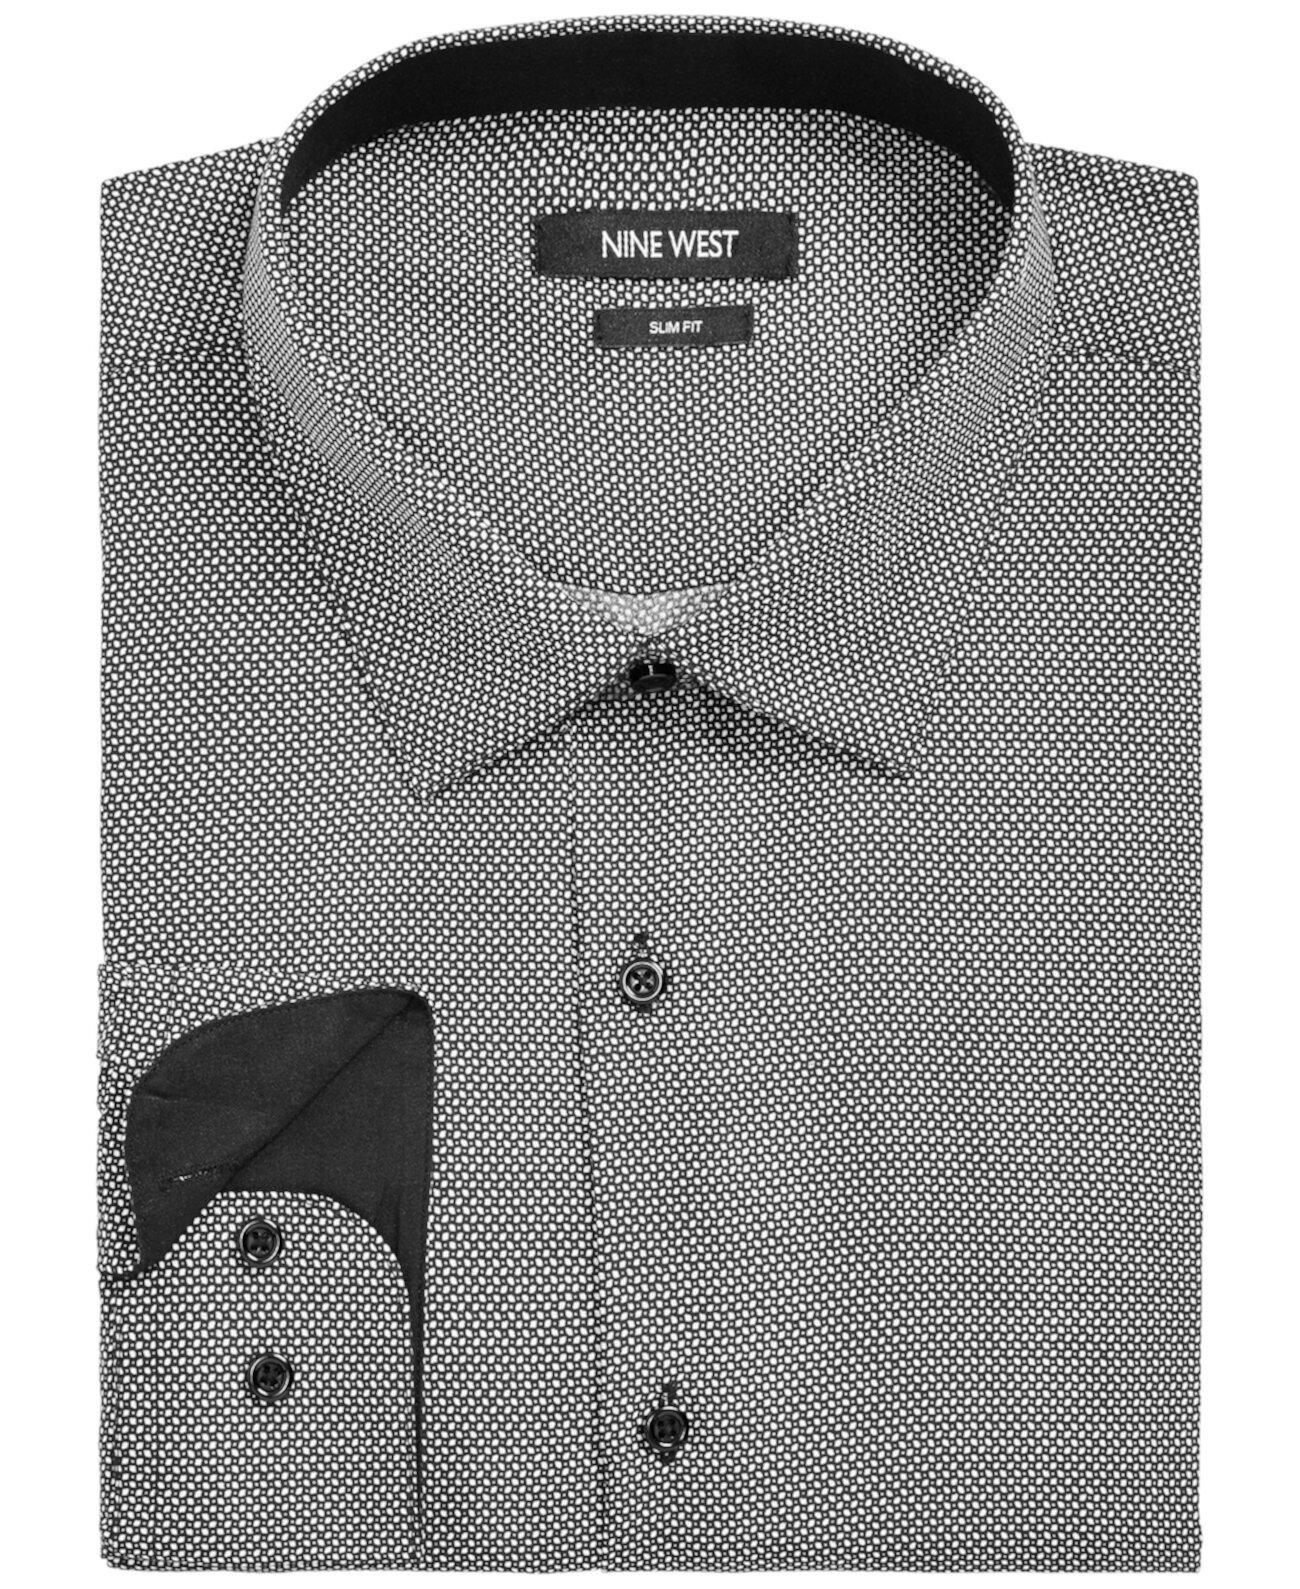 Мужская приталенная классическая рубашка из эластичного материала с ромбовидным принтом в горошек Nine West